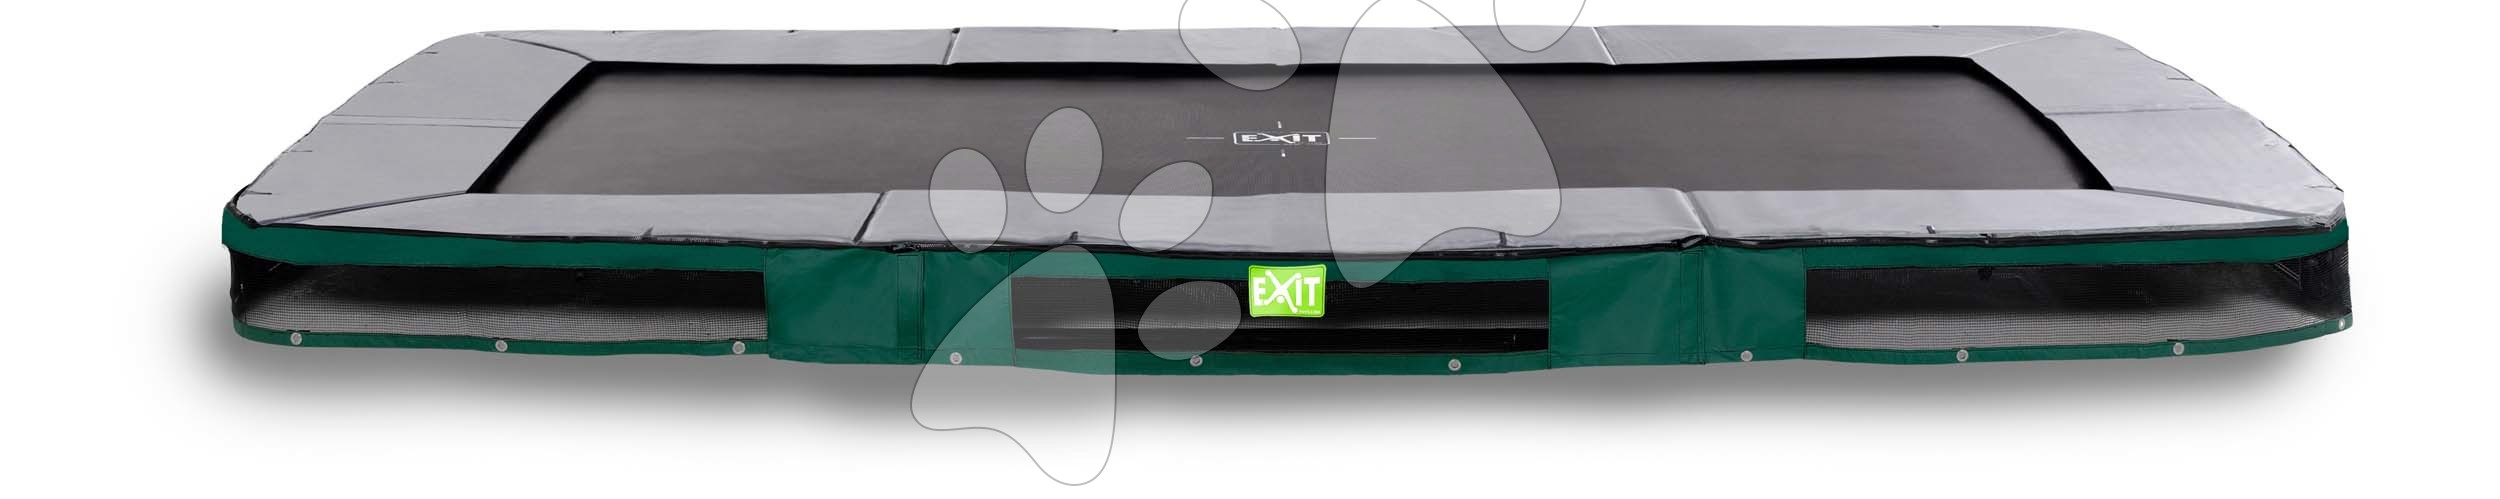 E-shop Trampolína Elegant Ground Sports Green Exit Toys prízemná 244*427 cm zelená